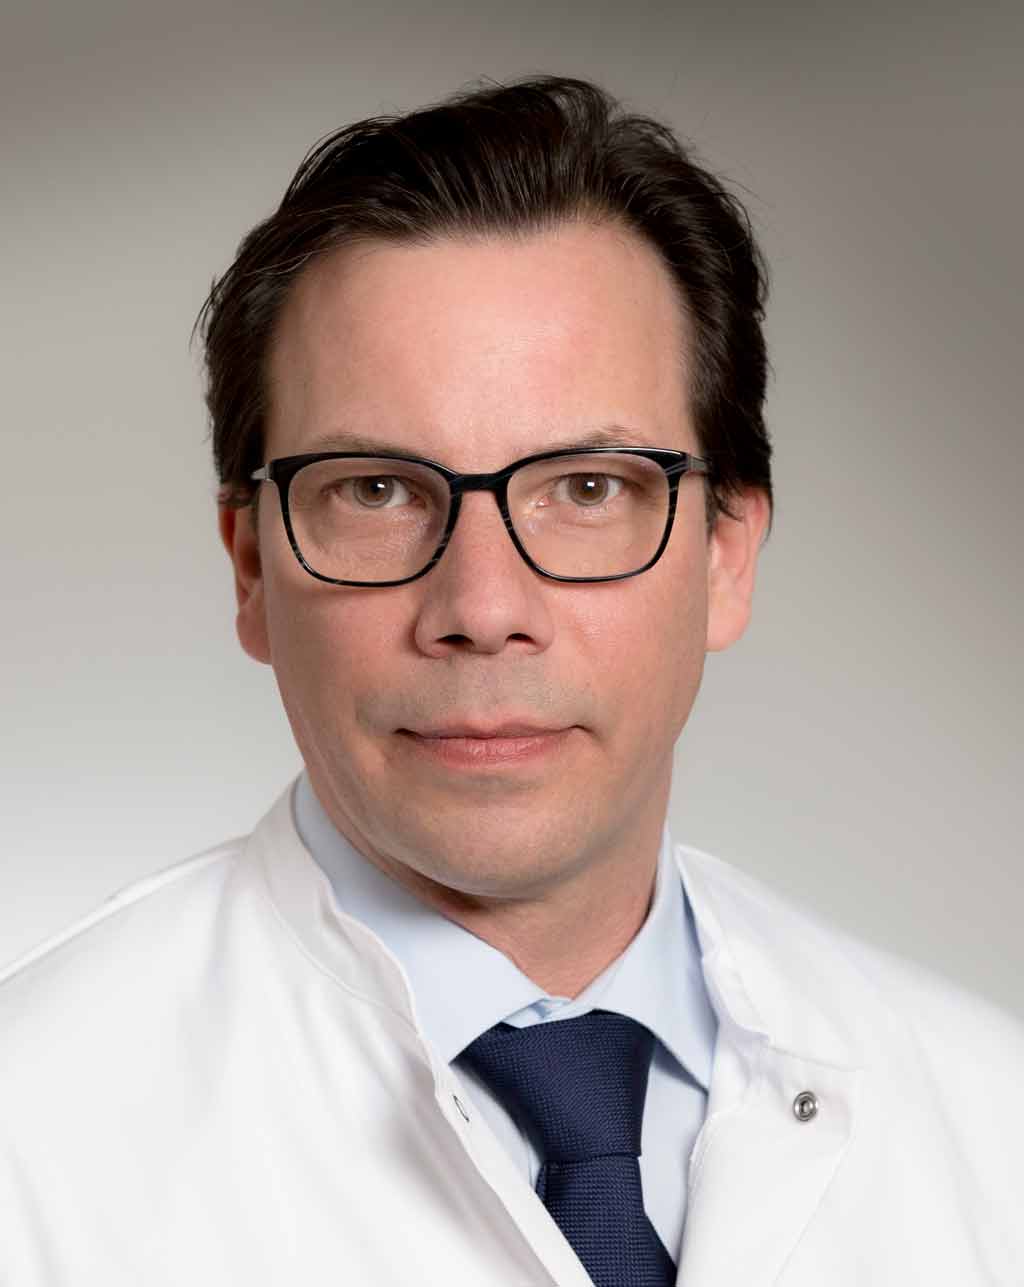 Prof. Dr. med. Johannes Schumacher Leiter von staR, Direktor des Zentrums für Humangenetik Universitätsklinikum Marburg